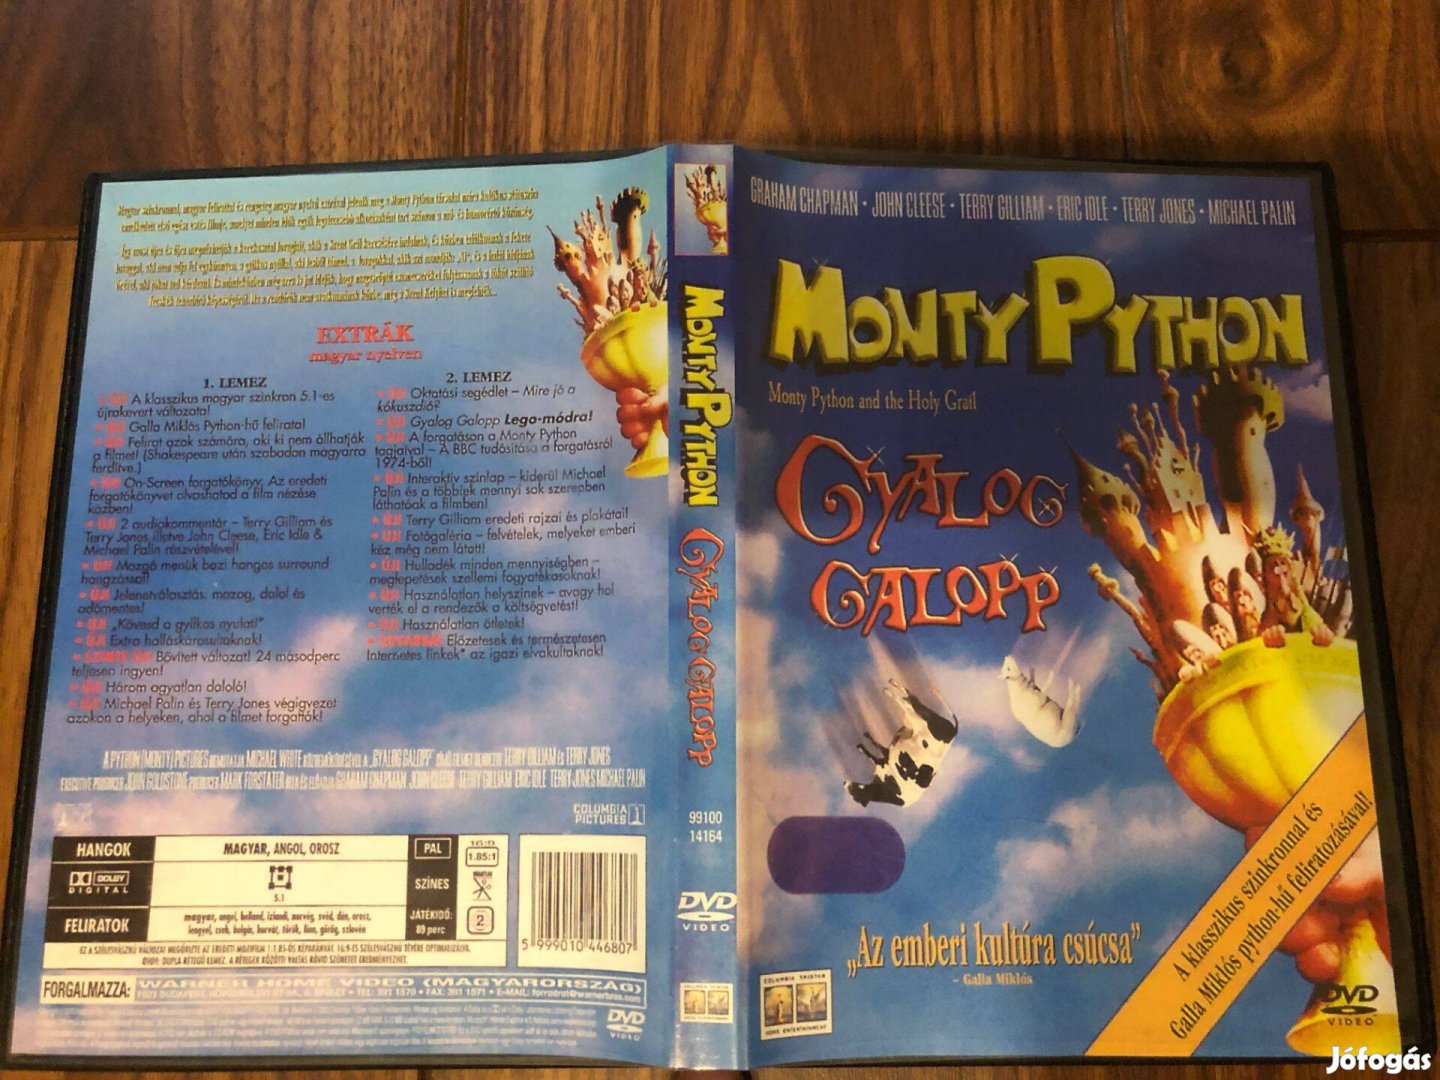 Gyaloggalopp (Monty Python, karcmentes) DVD